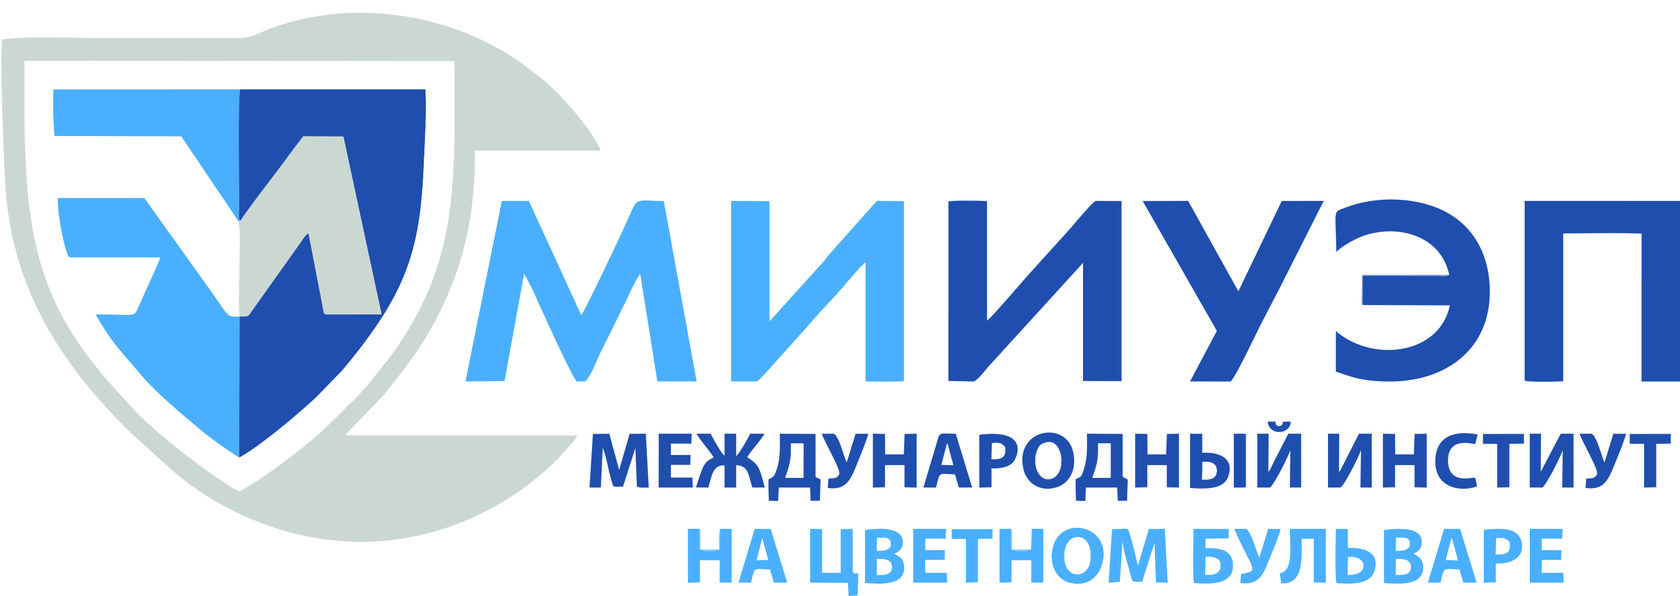 Институт управления и информатики. Логотип институт экономики.